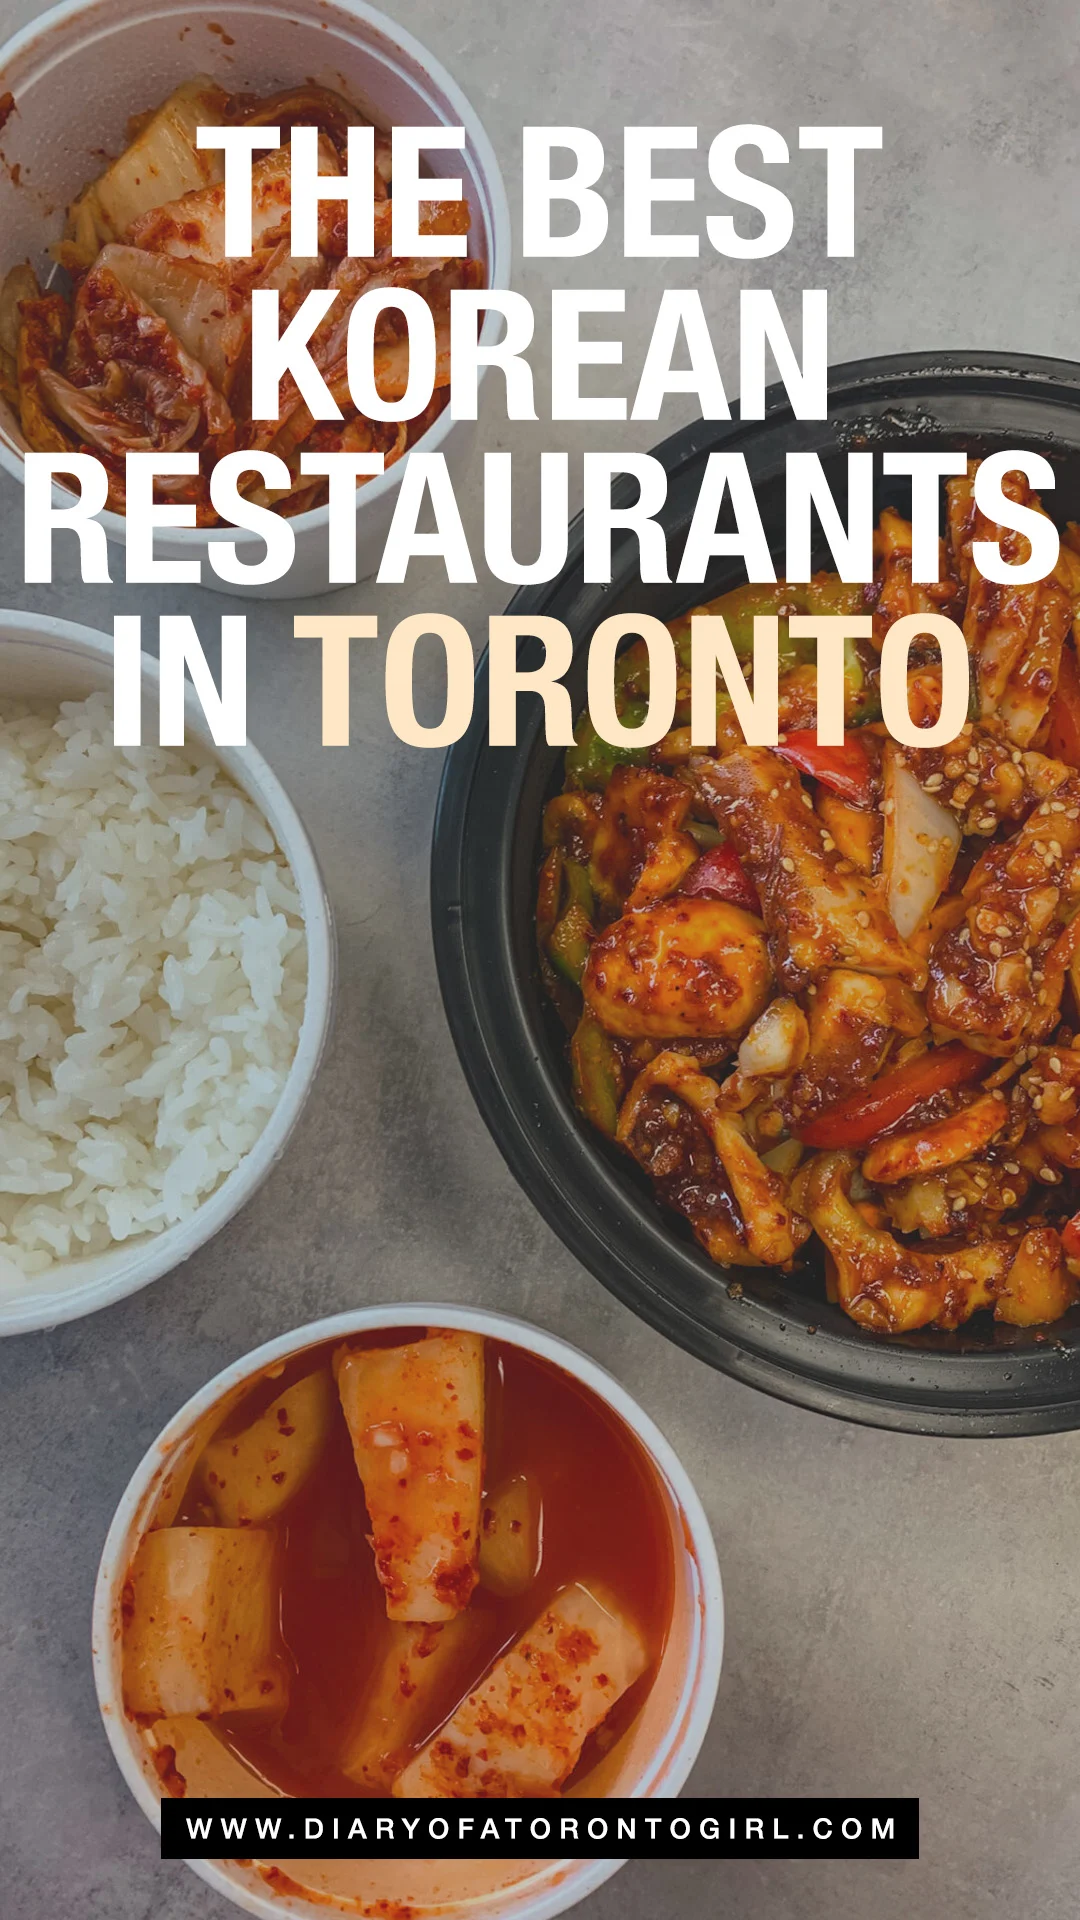 Best Korean restaurants in Toronto